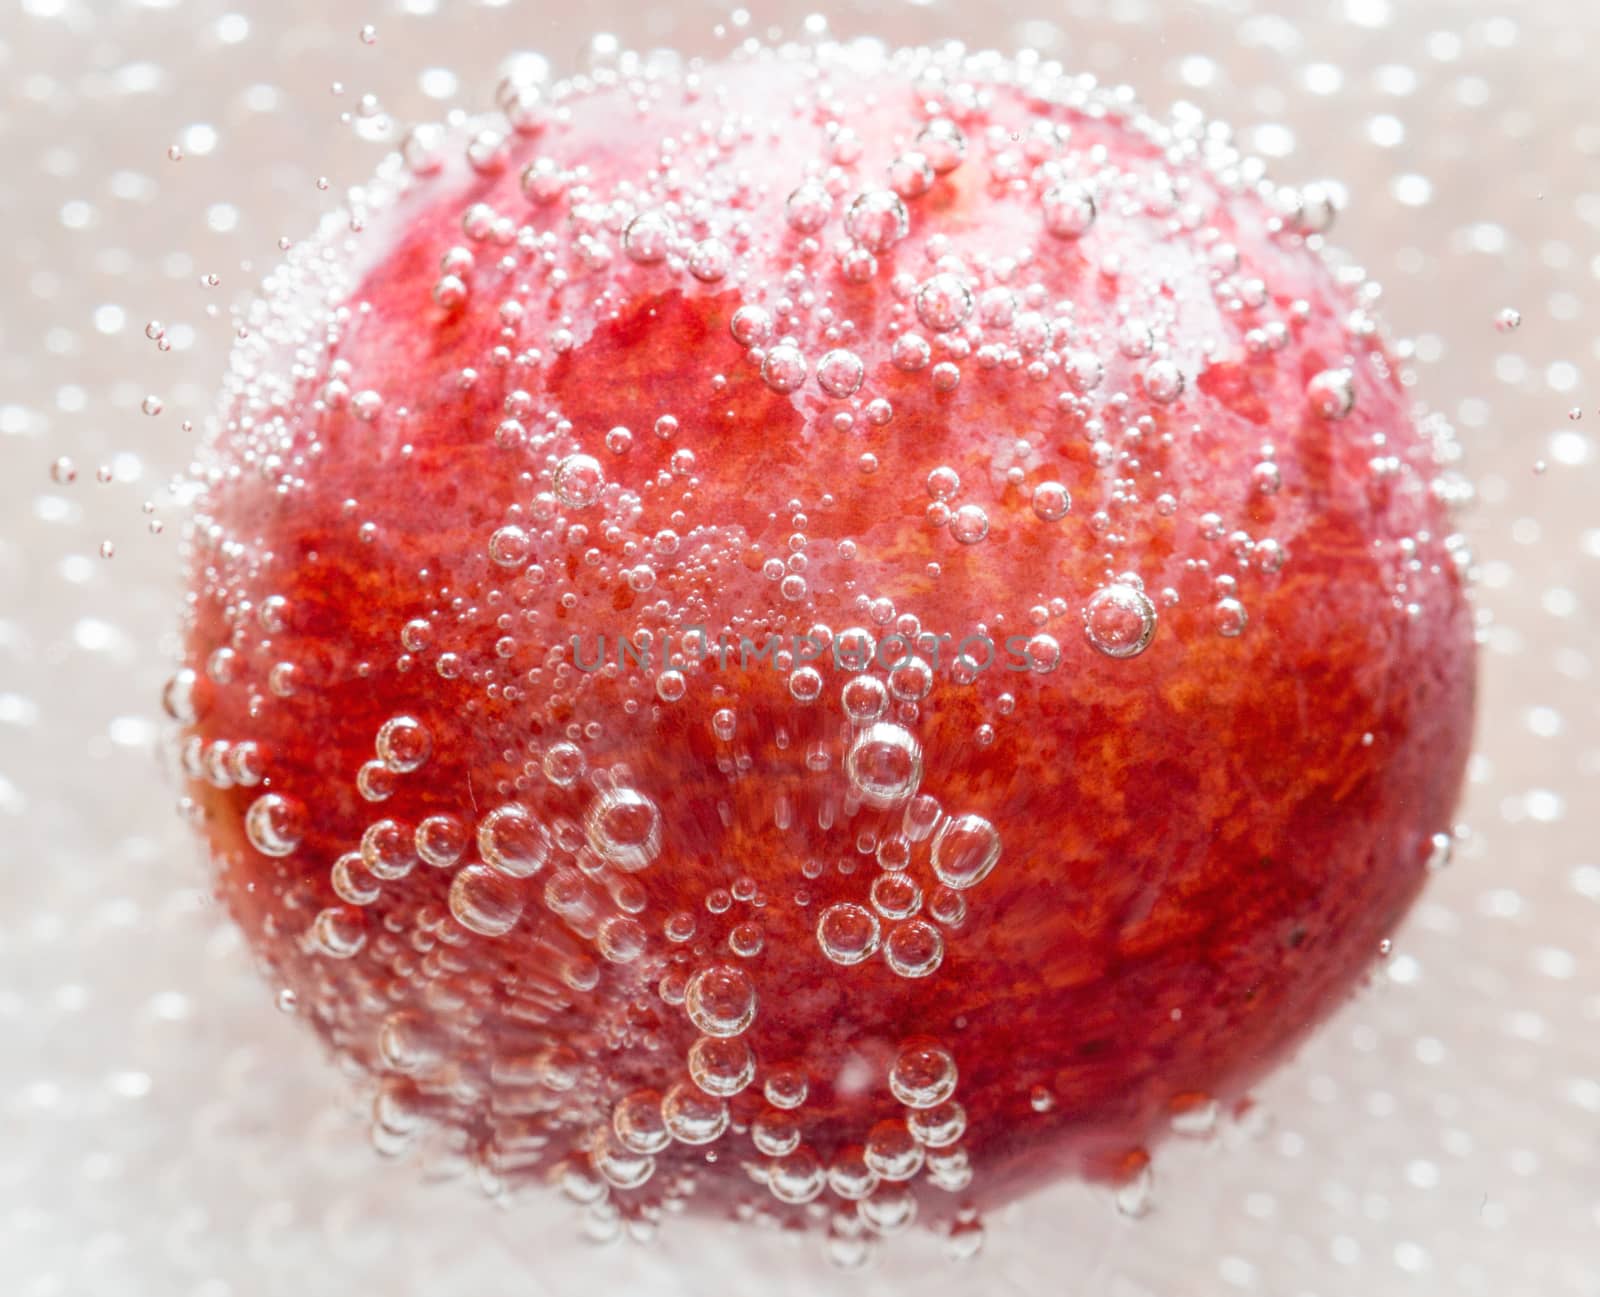 Grapes in the bubbles by AlexBush